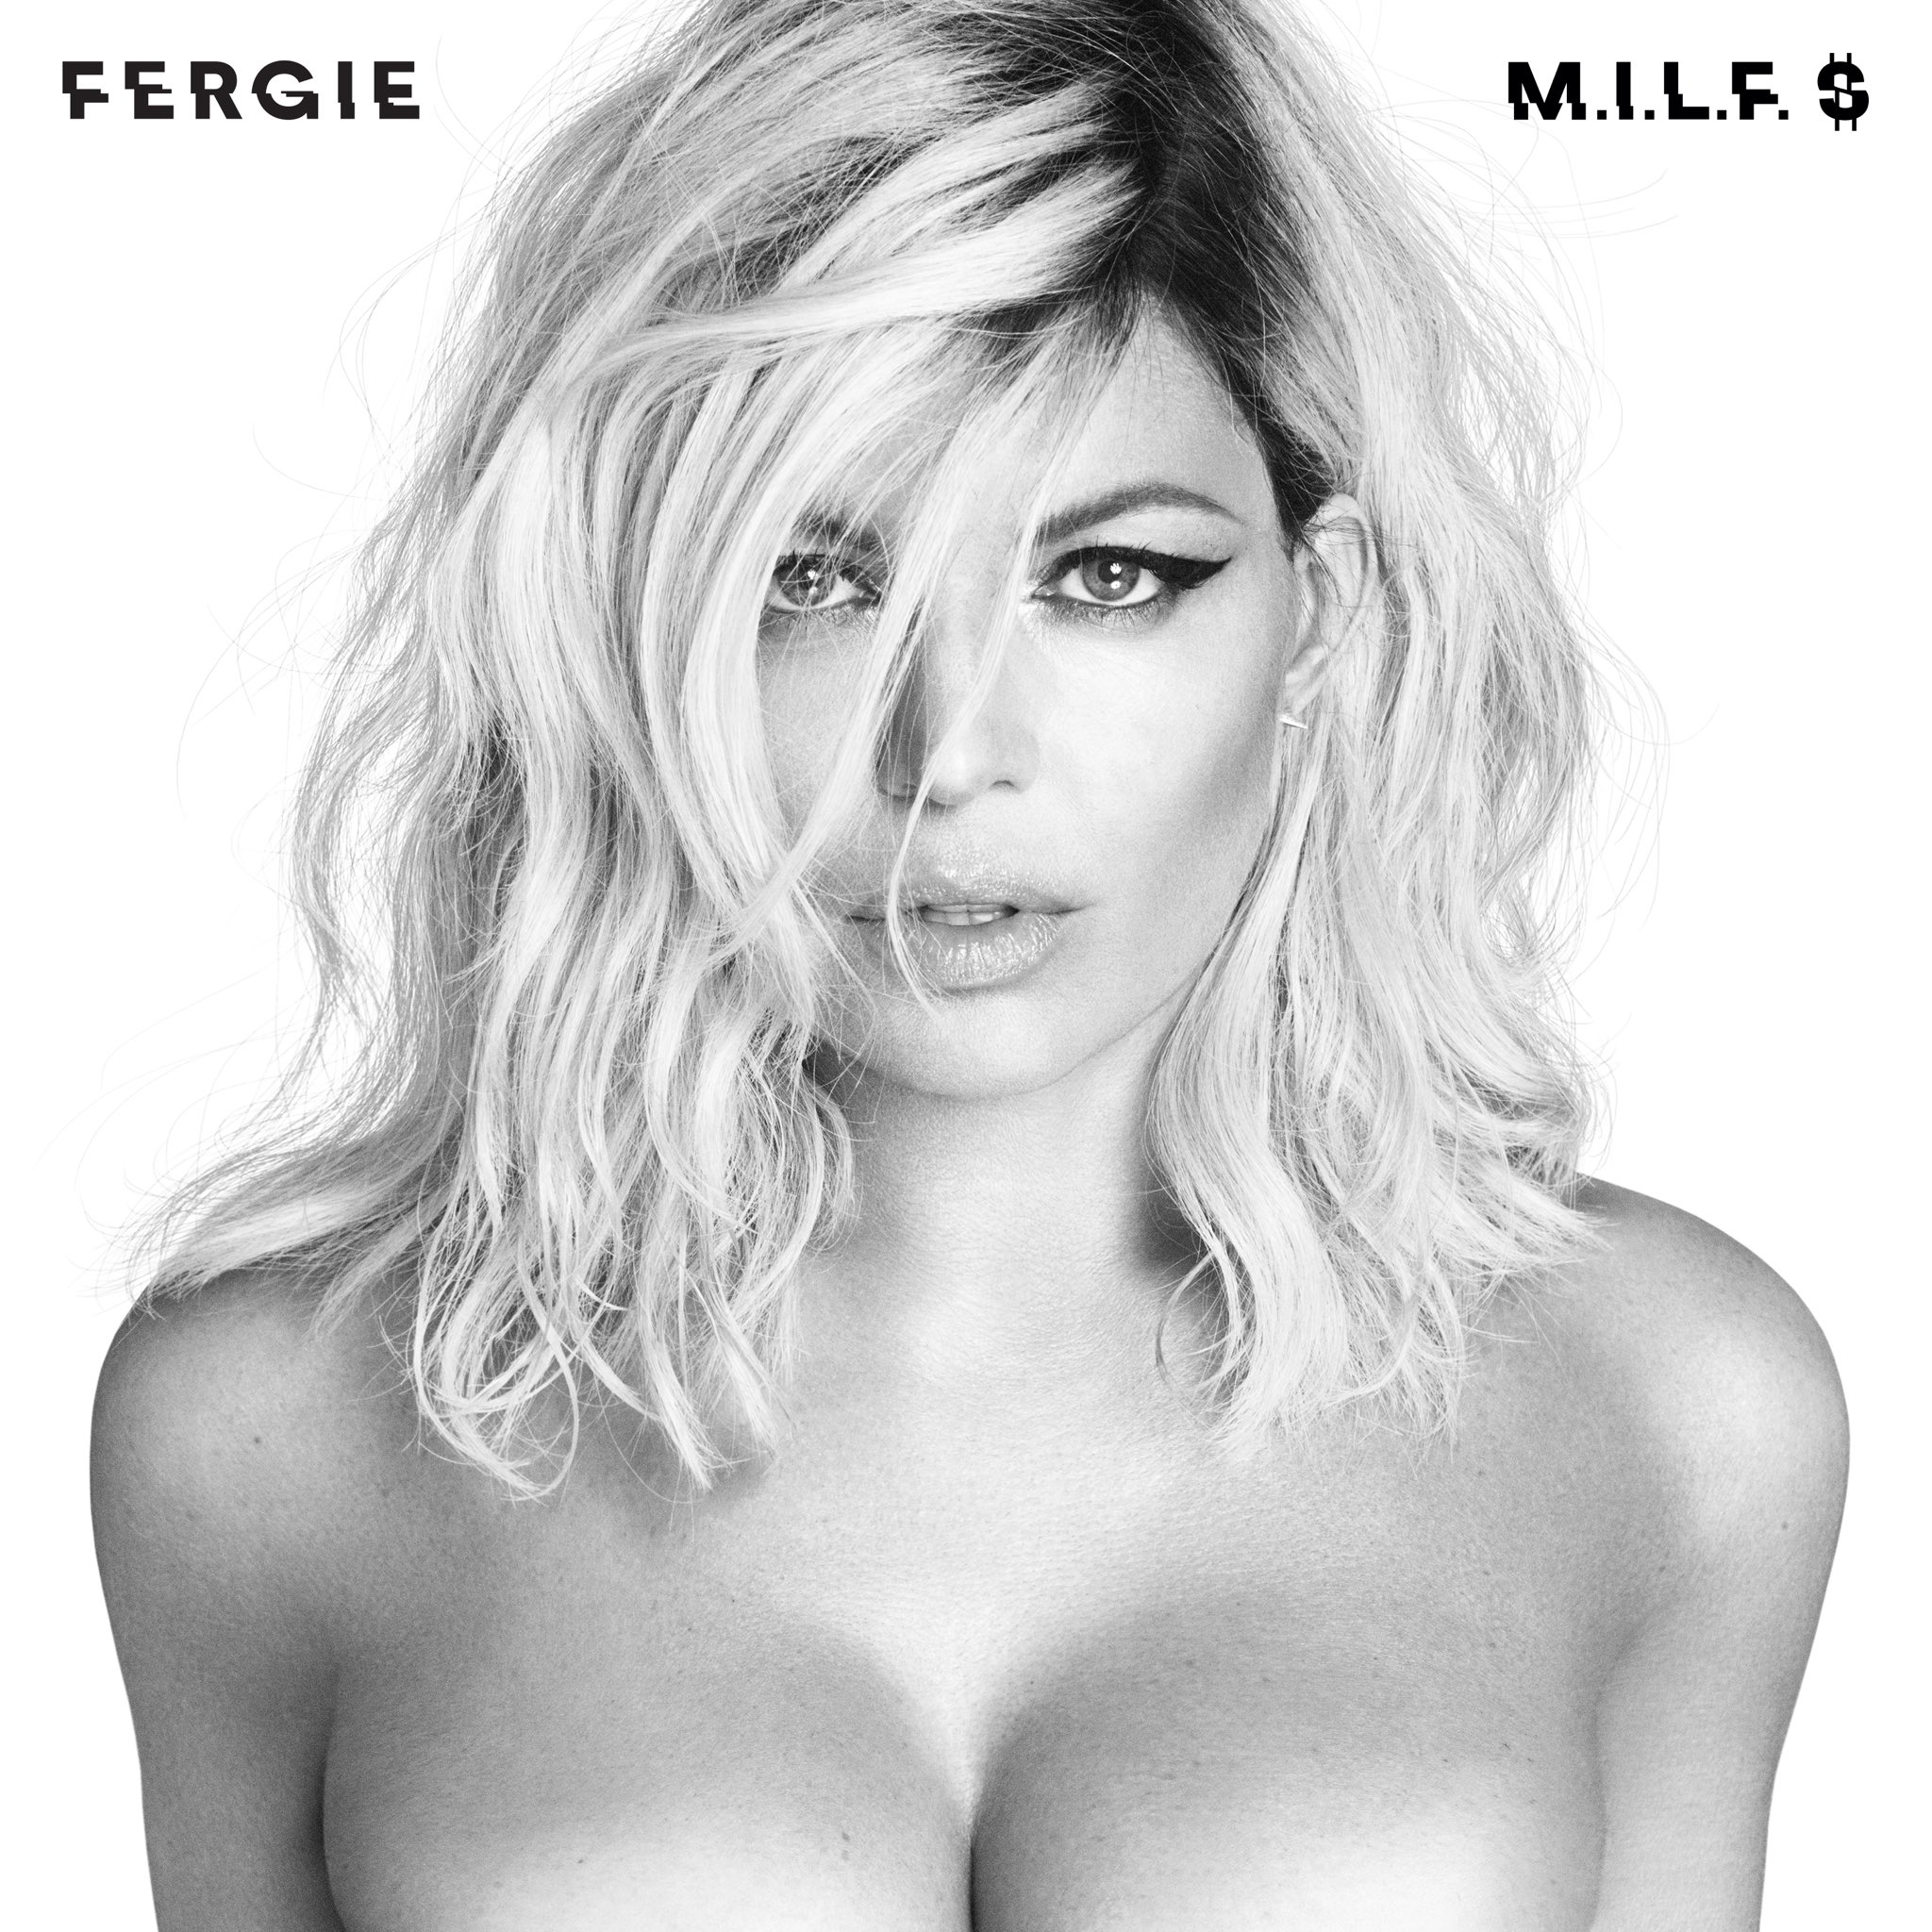 Fergie – ‘Milf Money’ (M.I.L.F. $)